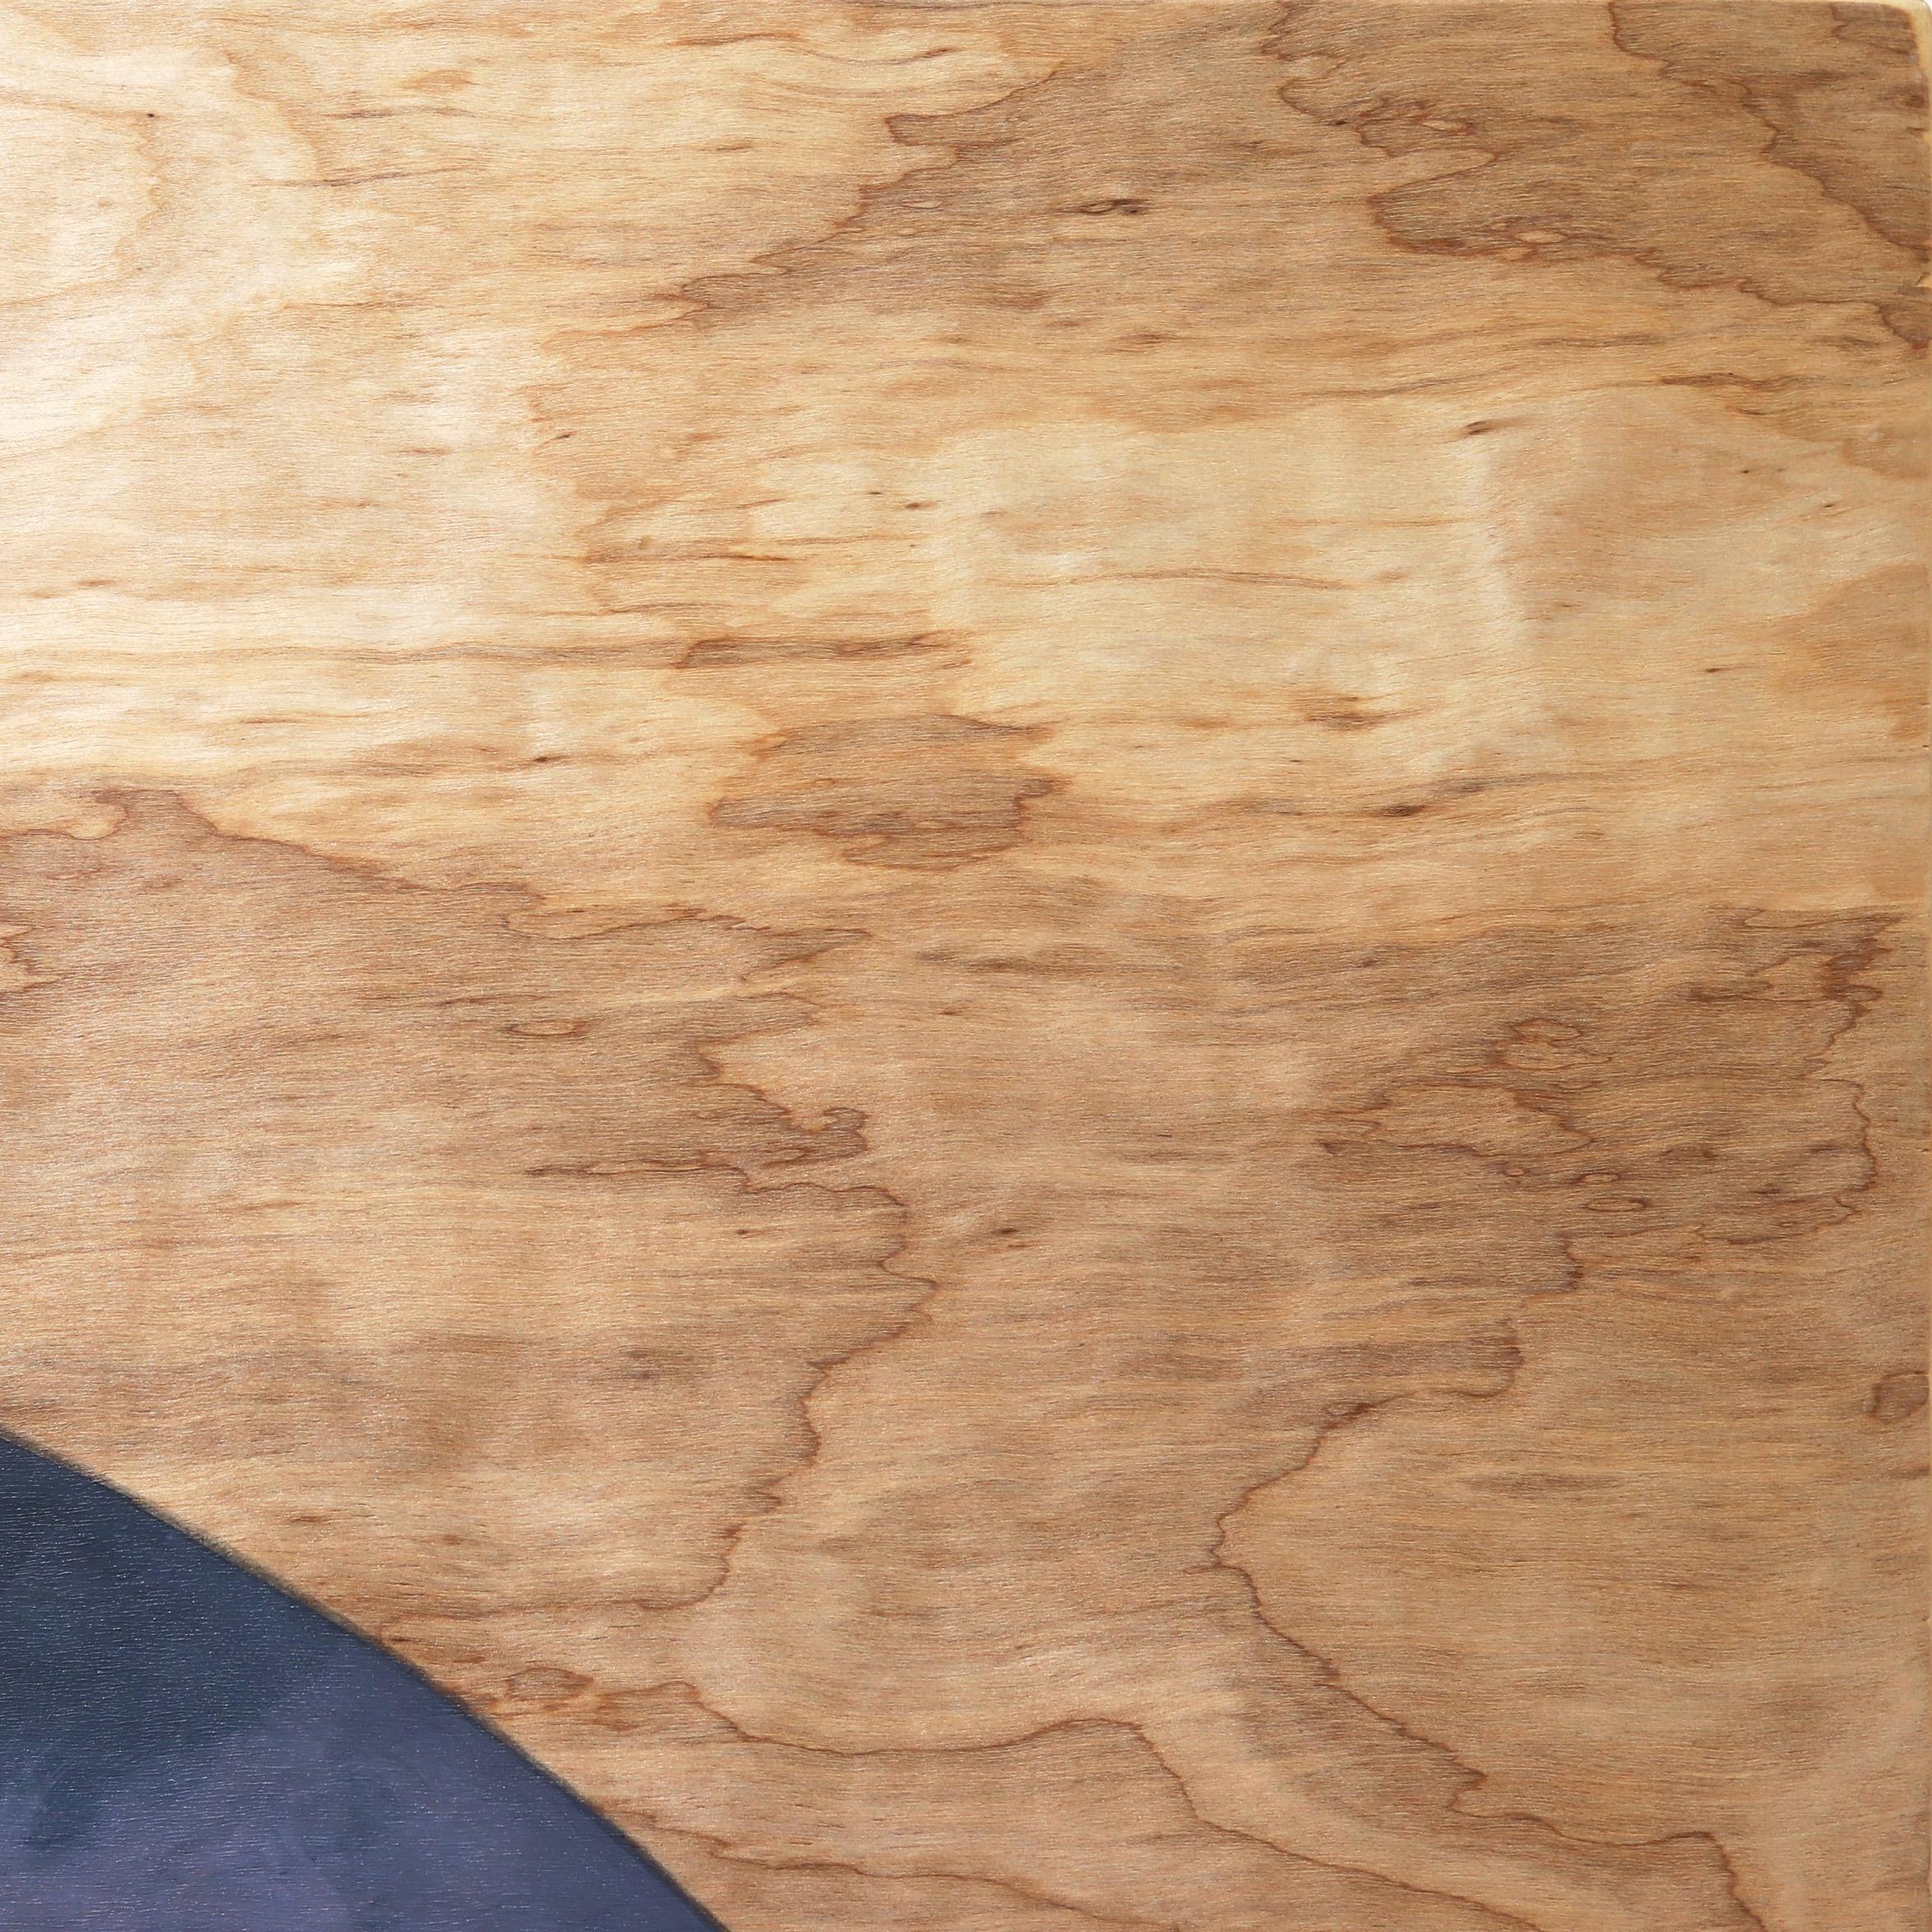 Eddy Lees figurative, surrealistische Porträtgemälde auf belichtetem Holz zeigen gefühlsbetonte Sirenen, die ein Gefühl von Geheimnis und Verführungskraft hervorrufen. Seine originellen Kunstwerke kombinieren geometrische Elemente mit unschuldigen